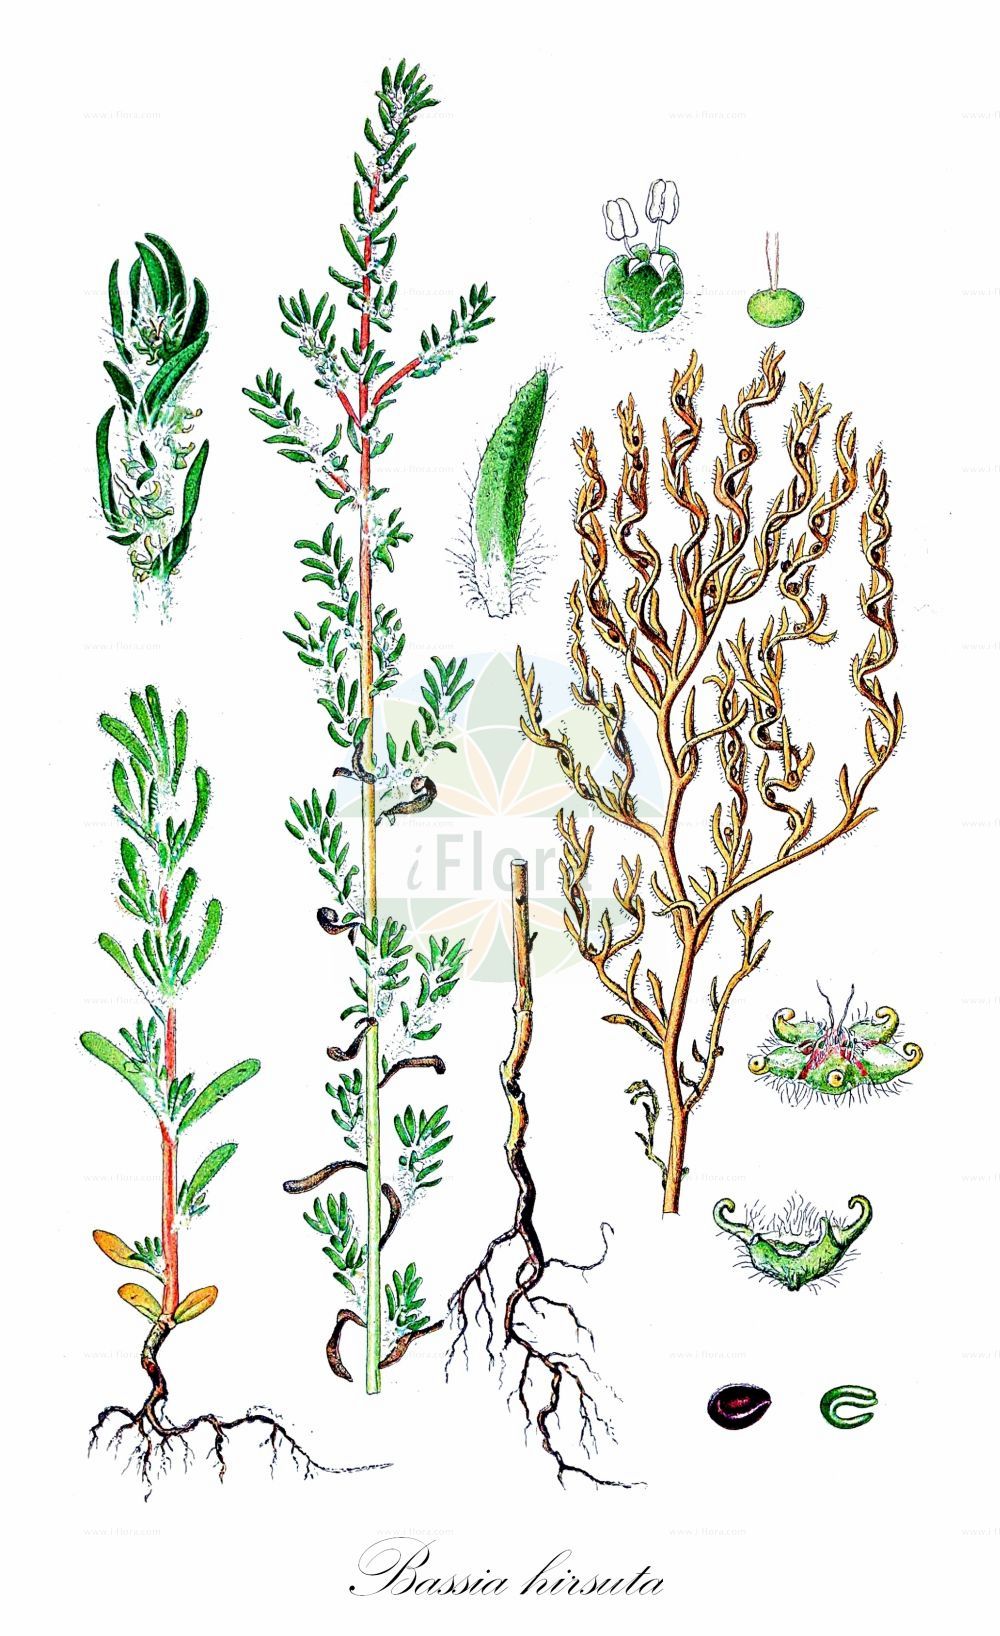 Historische Abbildung von Bassia hirsuta (Rauhaarige Dornmelde - Hairy Seablite). Das Bild zeigt Blatt, Bluete, Frucht und Same. ---- Historical Drawing of Bassia hirsuta (Rauhaarige Dornmelde - Hairy Seablite). The image is showing leaf, flower, fruit and seed.(Bassia hirsuta,Rauhaarige Dornmelde,Hairy Seablite,Bassia hirsuta,Chenopodium hirsutum,Echinopsilon hirsutum,Kochia hirsuta,Rauhaarige Dornmelde,Rauhhaarige Dornmelde,Hairy Seablite,Hairy Smotherweed,Bassia,Dornmelde,Smotherweed,Amaranthaceae,Fuchsschwanzgewächse,Pigweed family,Blatt,Bluete,Frucht,Same,leaf,flower,fruit,seed,Lindman (1901-1905))